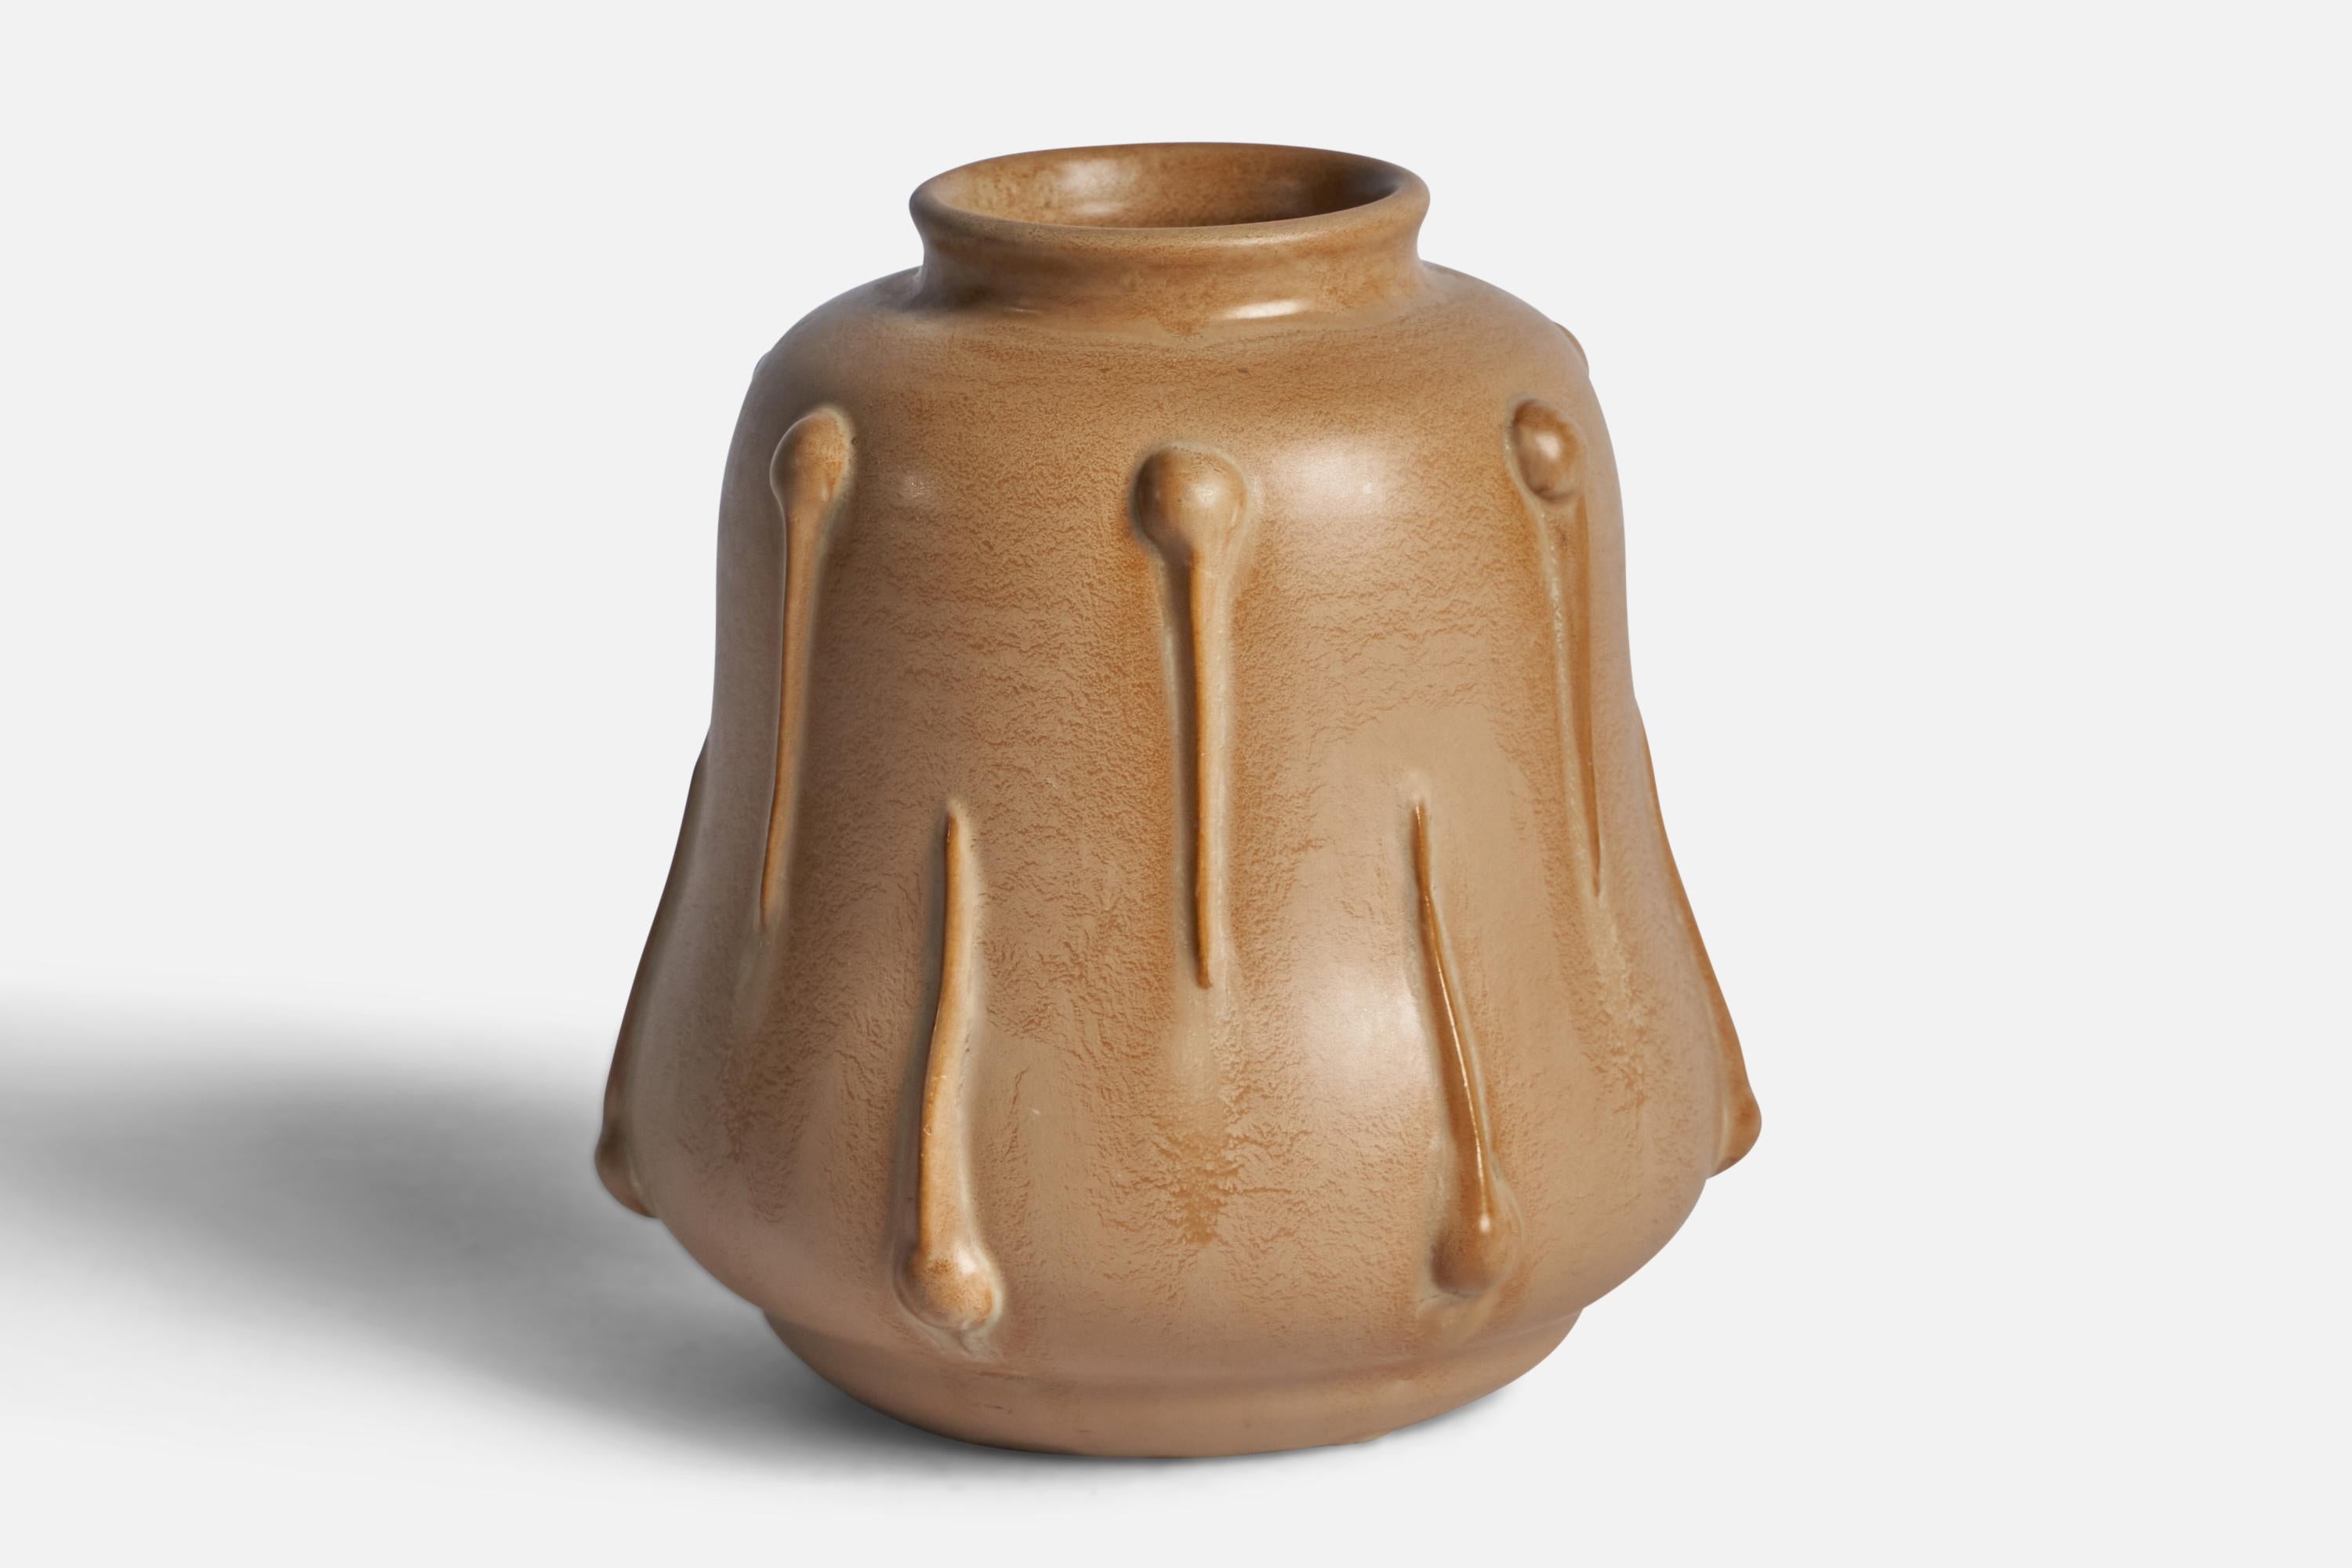 A beige-glazed earthenware vase designed by Ewald Dahlskog and produced by Bo Fajans, Sweden, c. 1930s.